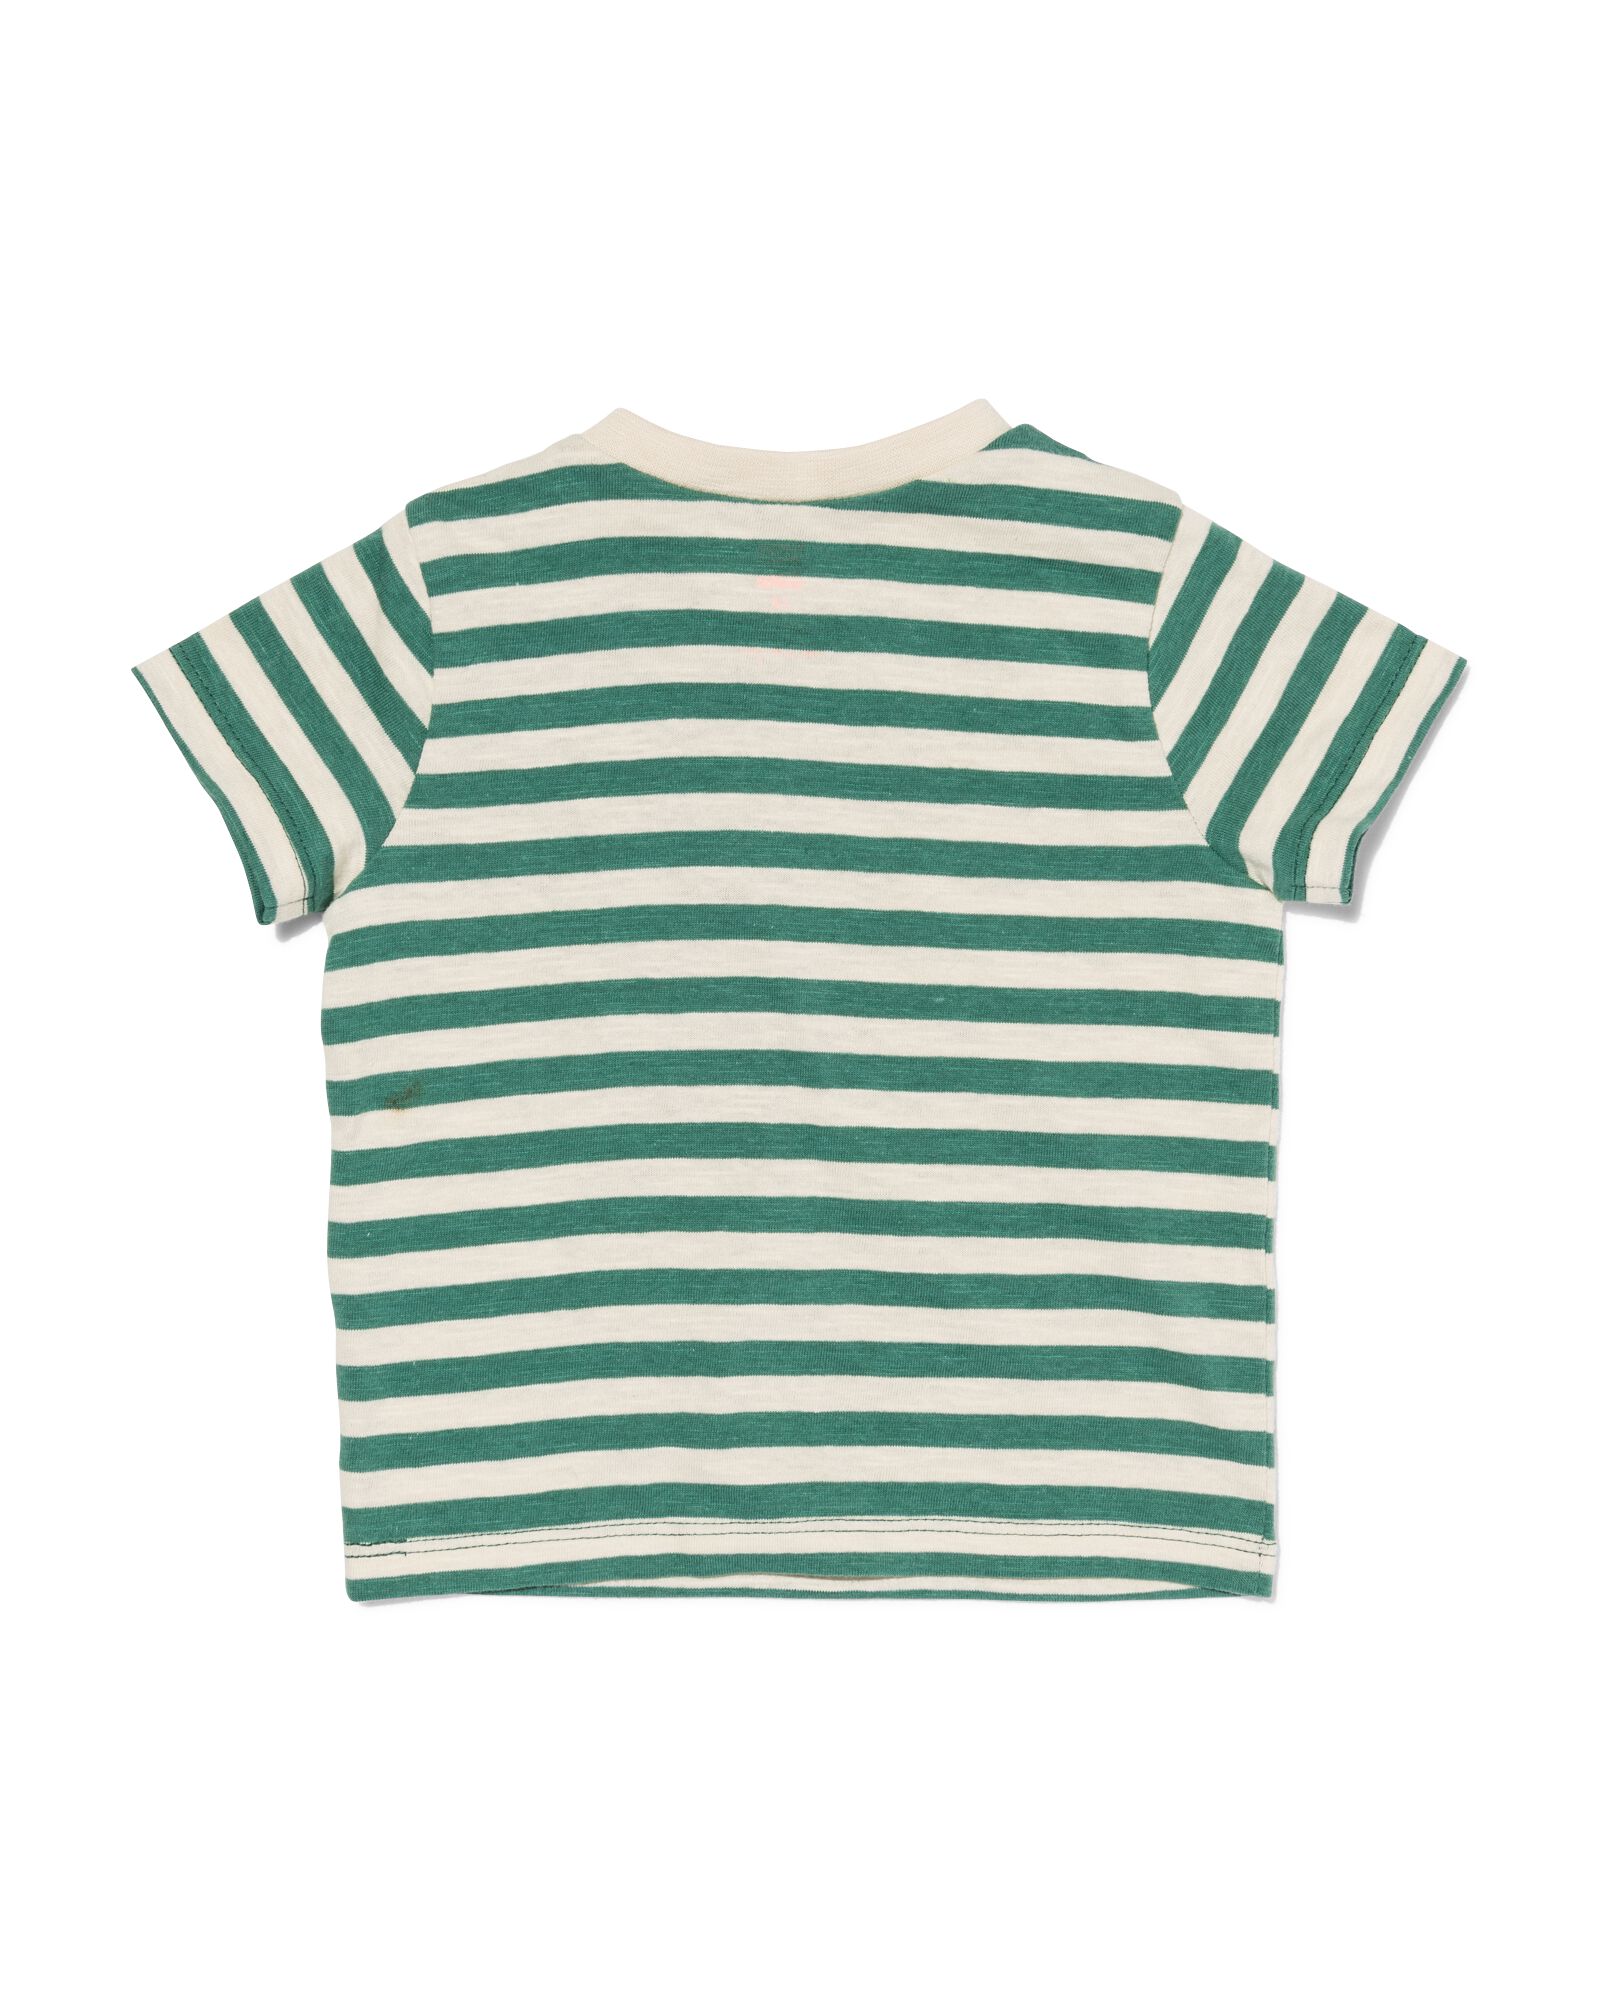 baby t-shirt dino/streep - 2 stuks groen - 1000030538 - HEMA